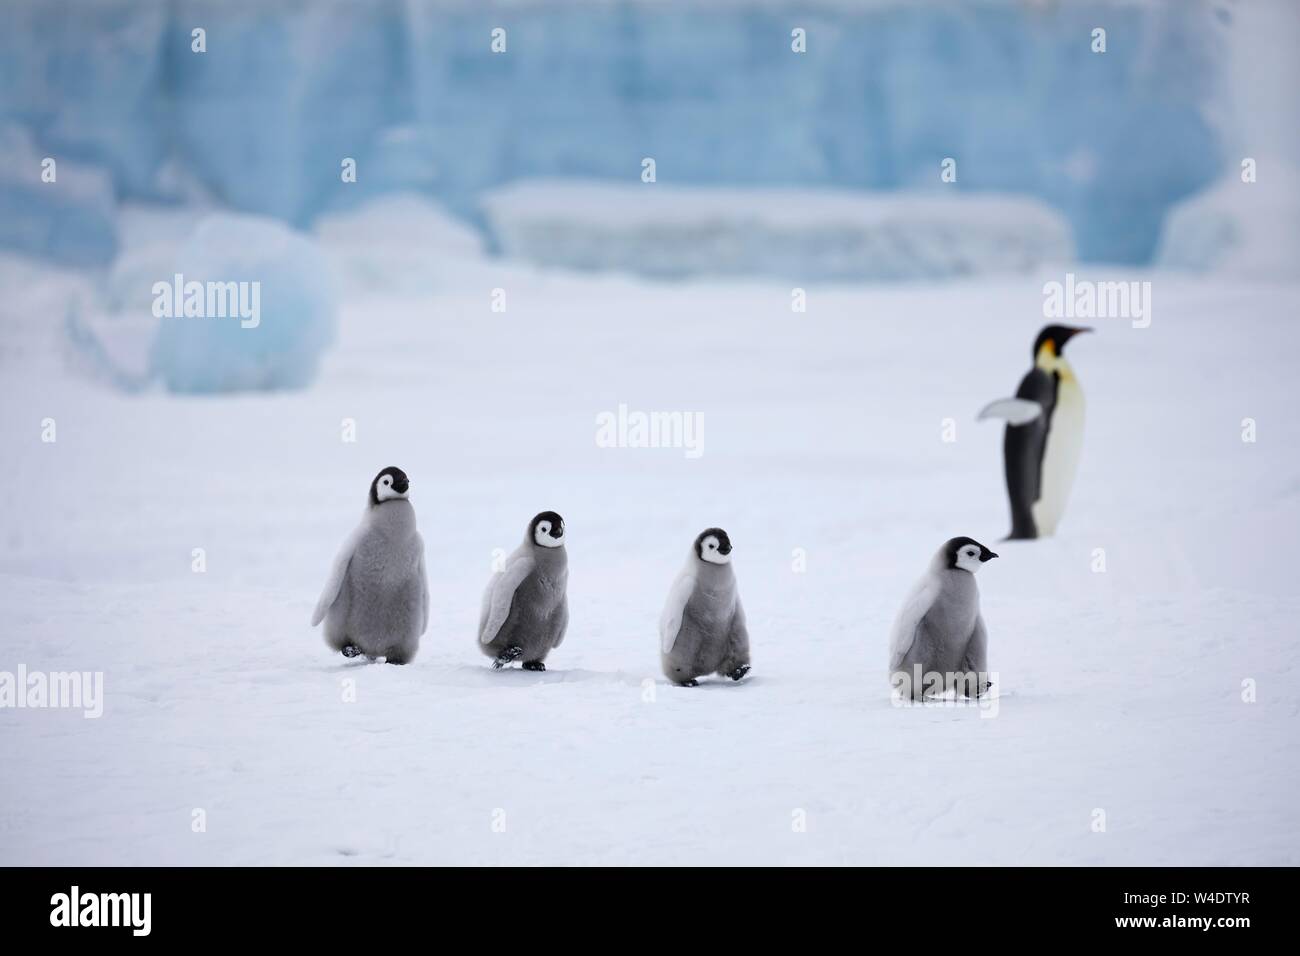 Pinguini imperatore (Aptenodytes forsteri), chick in goose marzo di fronte blu ghiaccio, un adulto in retro, Snow Hill Island, Mare di Weddell, Antartide Foto Stock